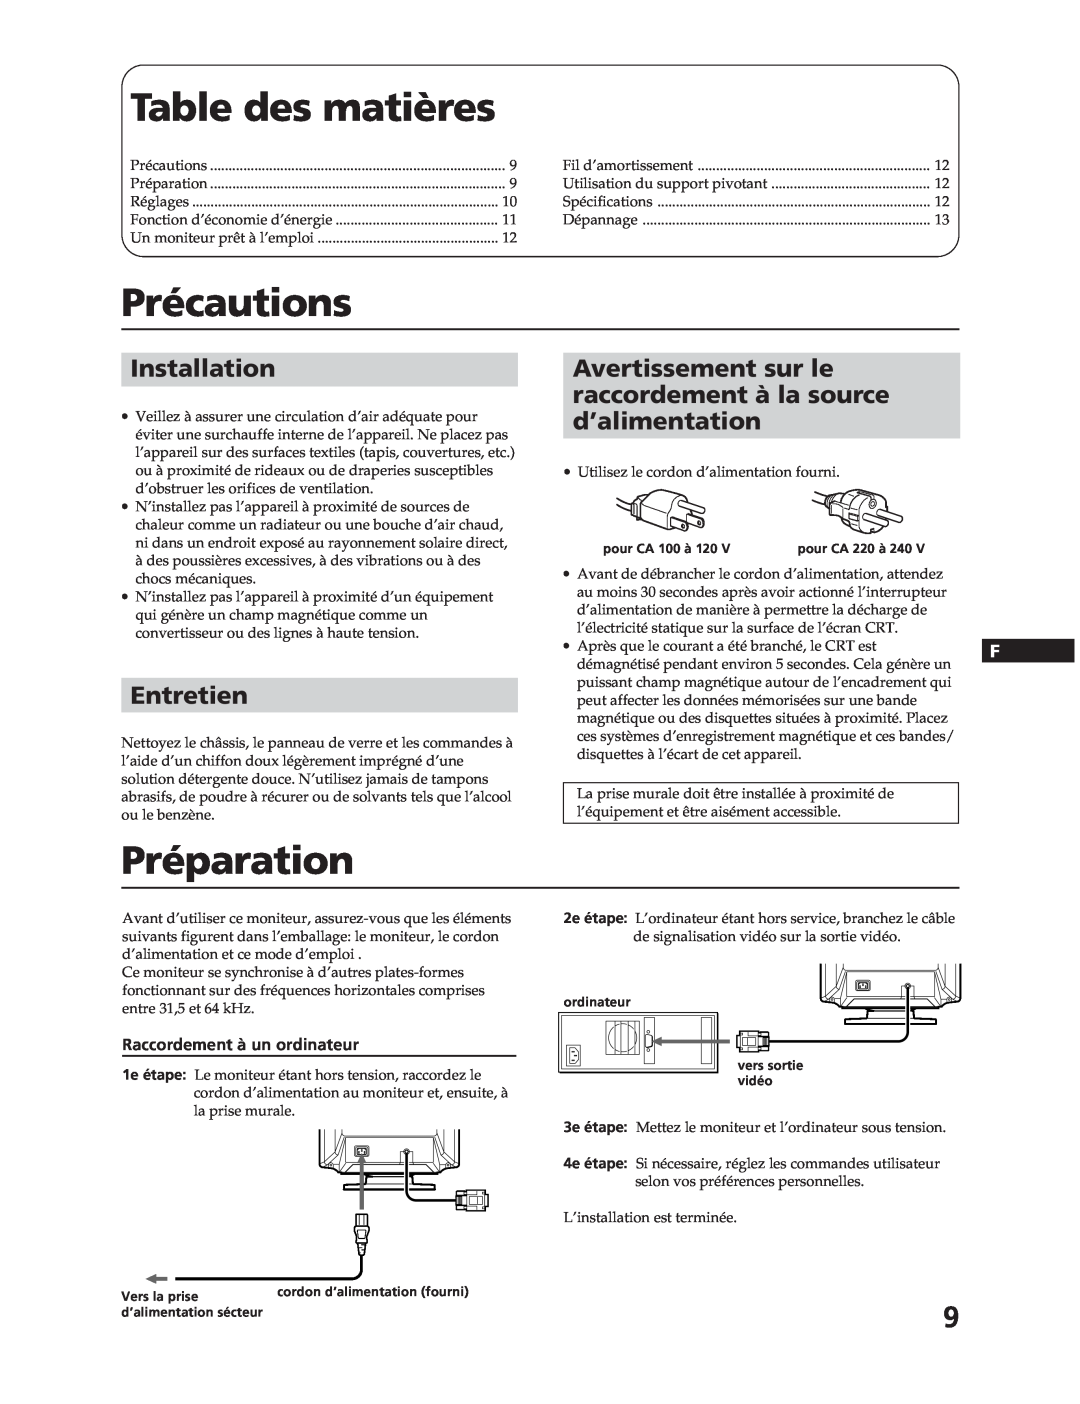 Sony CPD-17F03 manual Table des matières, Précautions, Préparation, Entretien, Raccordement à un ordinateur, Installation 